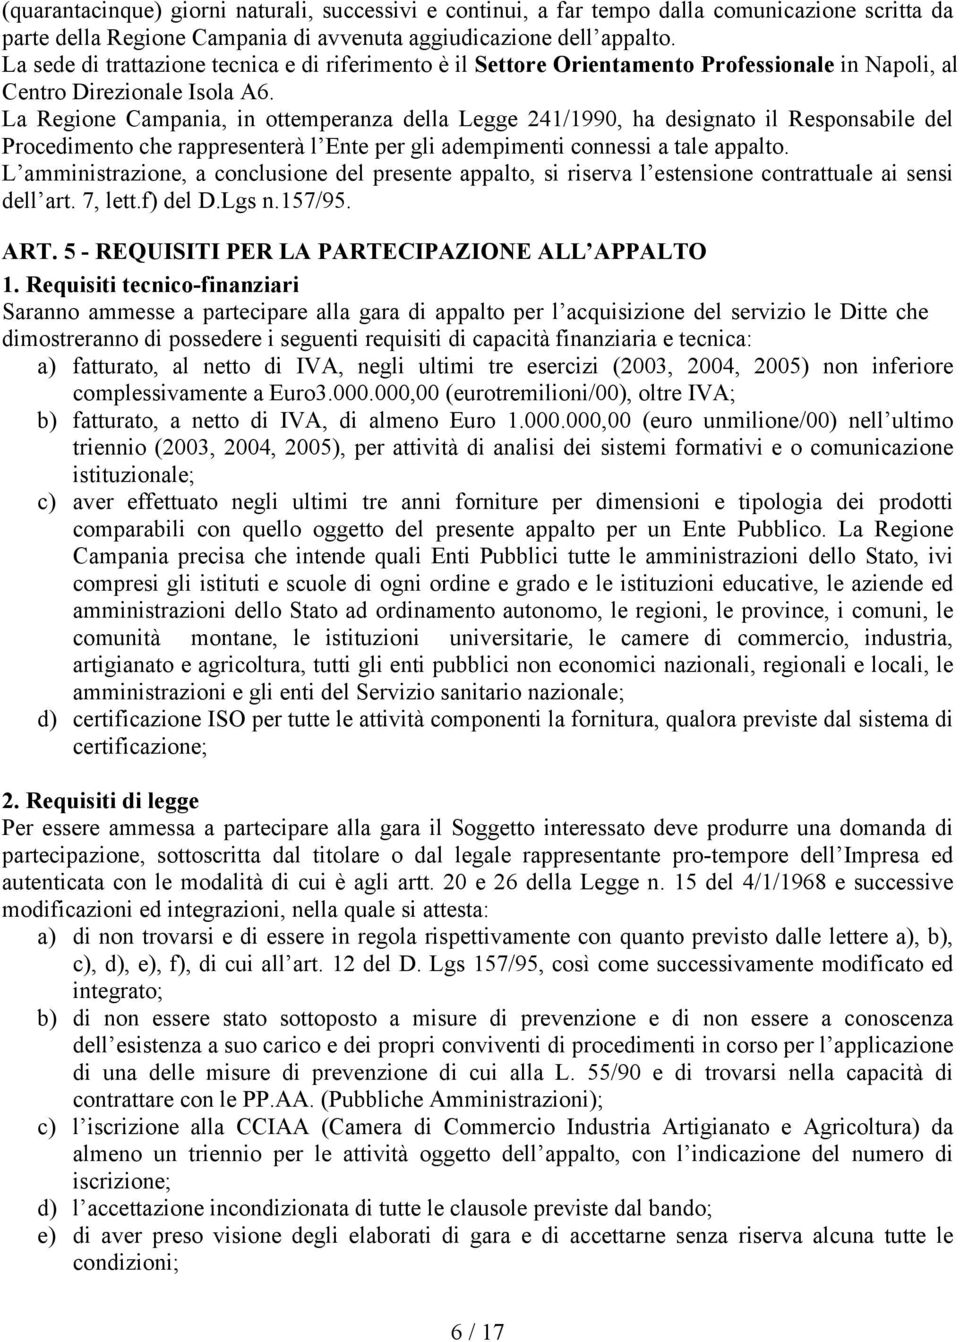 La Regione Campania, in ottemperanza della Legge 241/1990, ha designato il Responsabile del Procedimento che rappresenterà l Ente per gli adempimenti connessi a tale appalto.